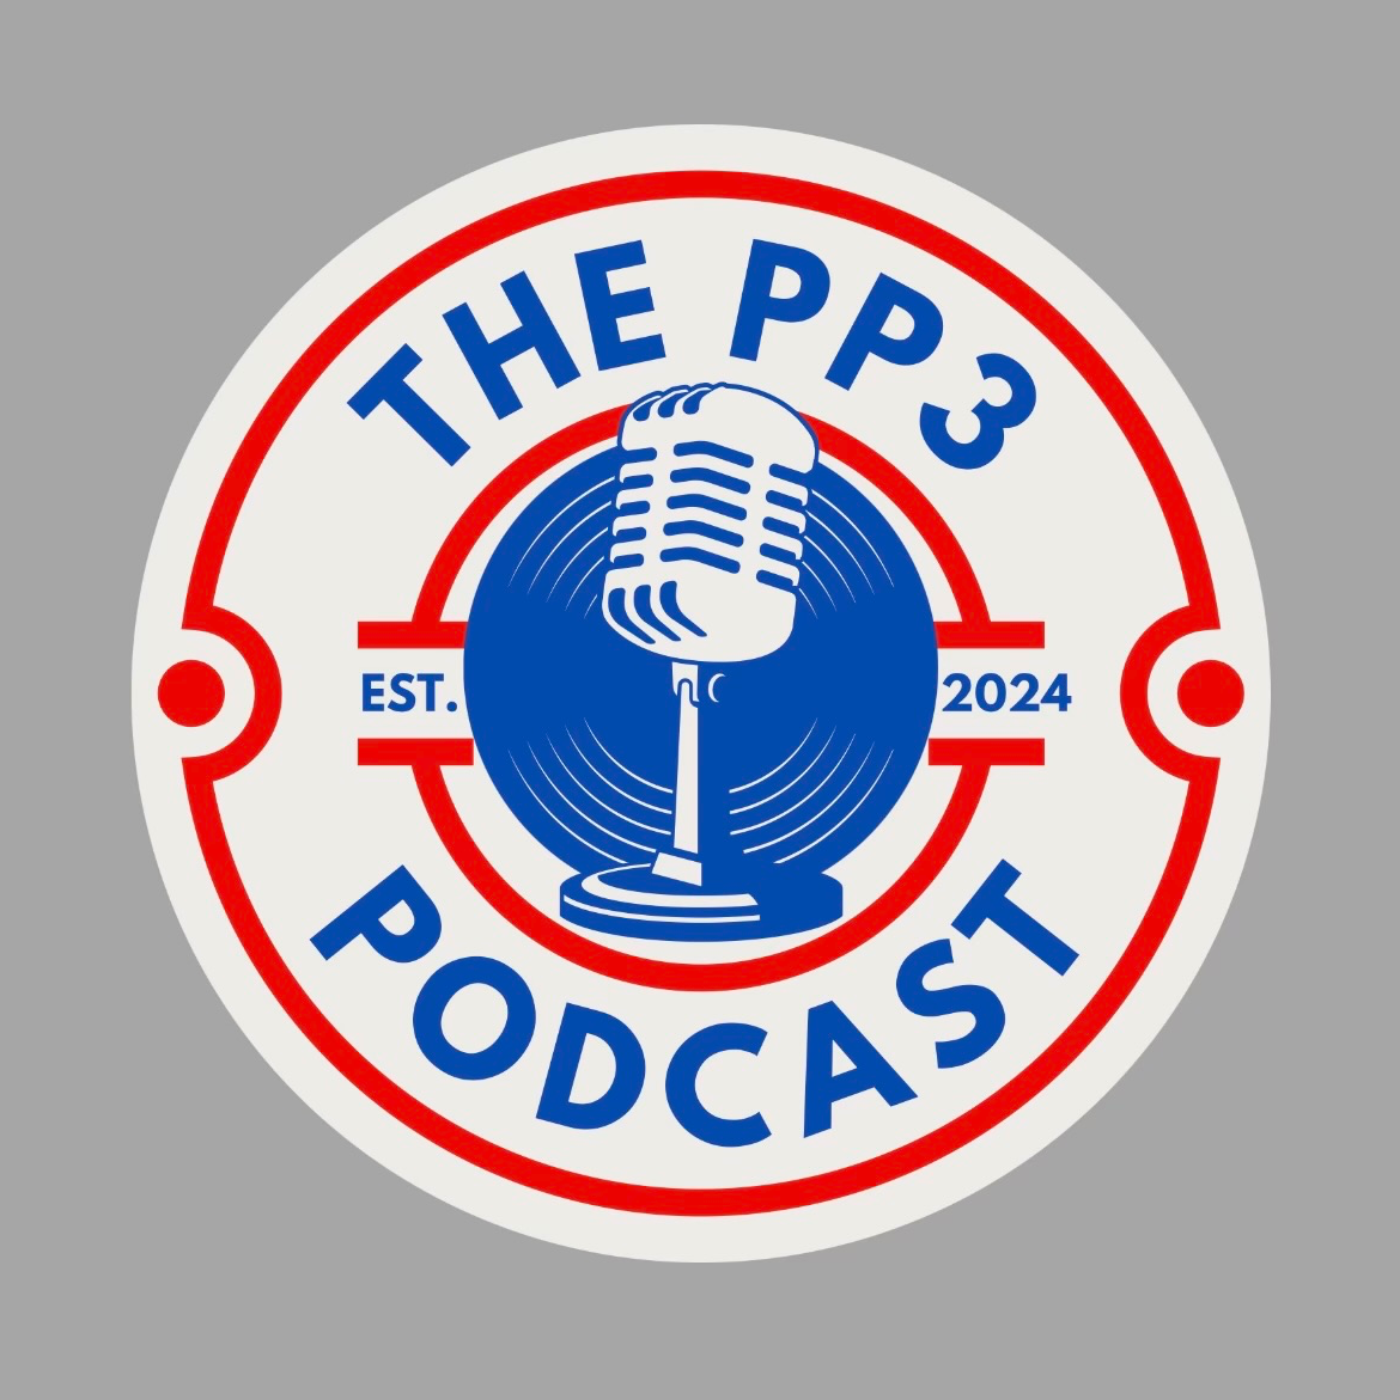 PP3 Episode 2: Featuring Brayden Ross